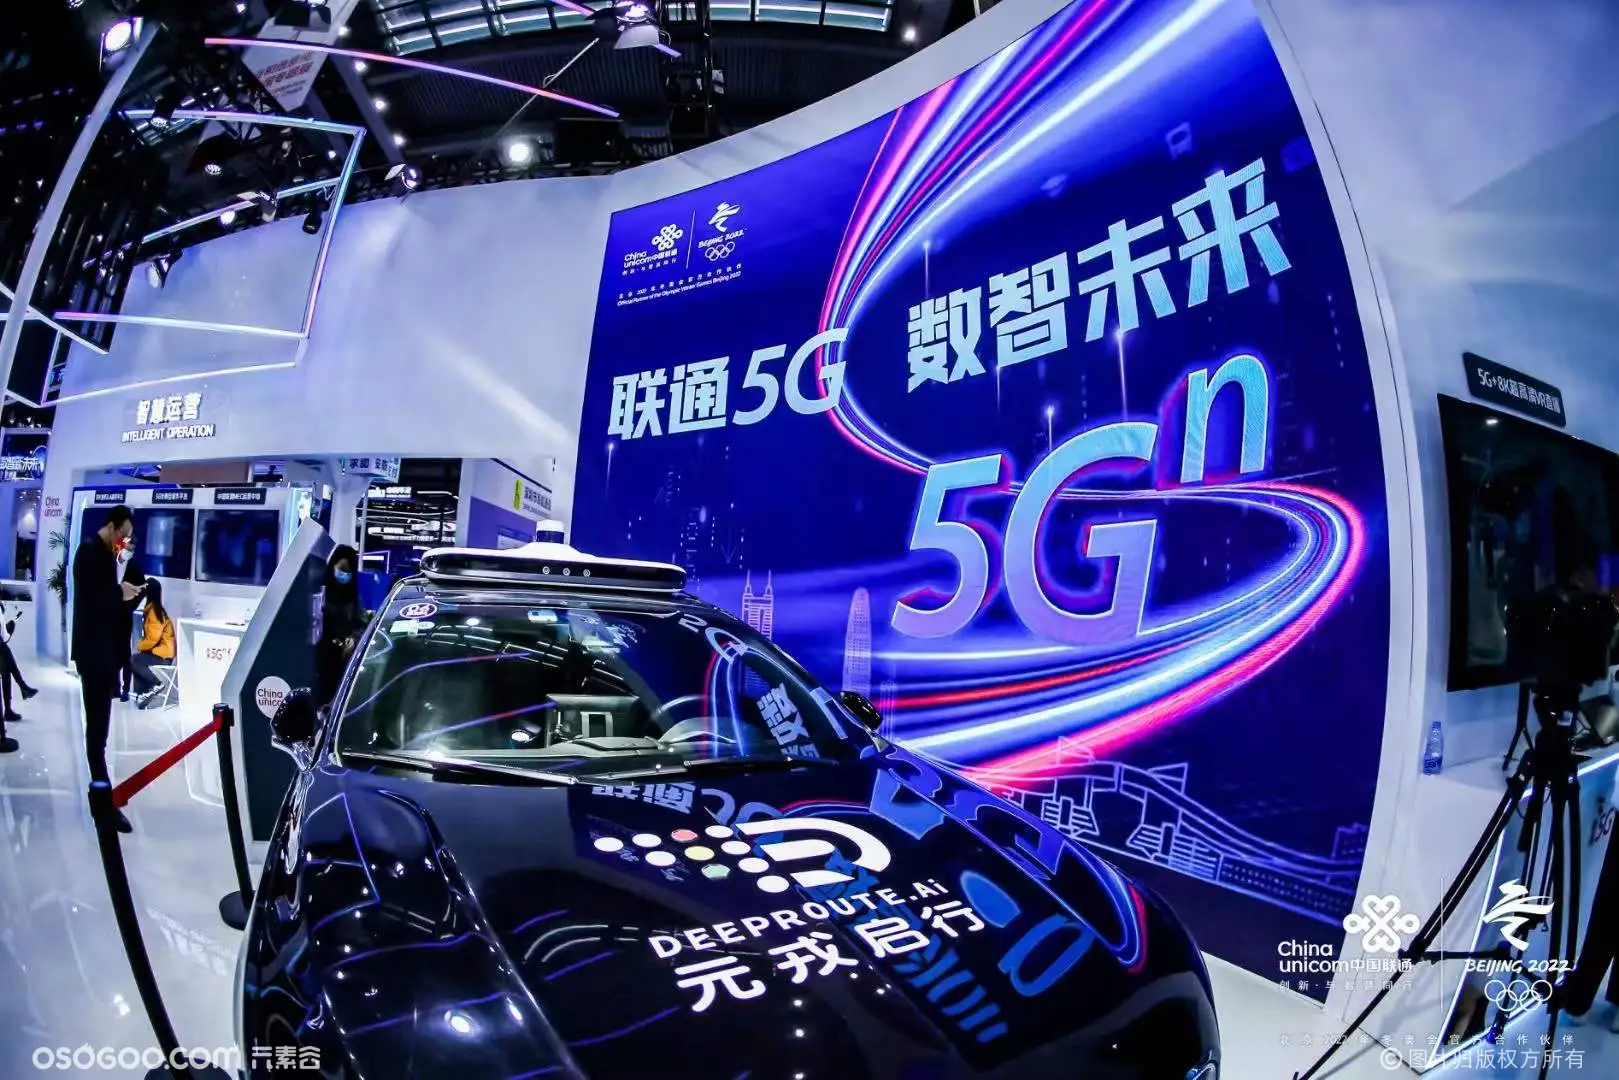 联通5G 数智未来 第23届高交会中国联通展位